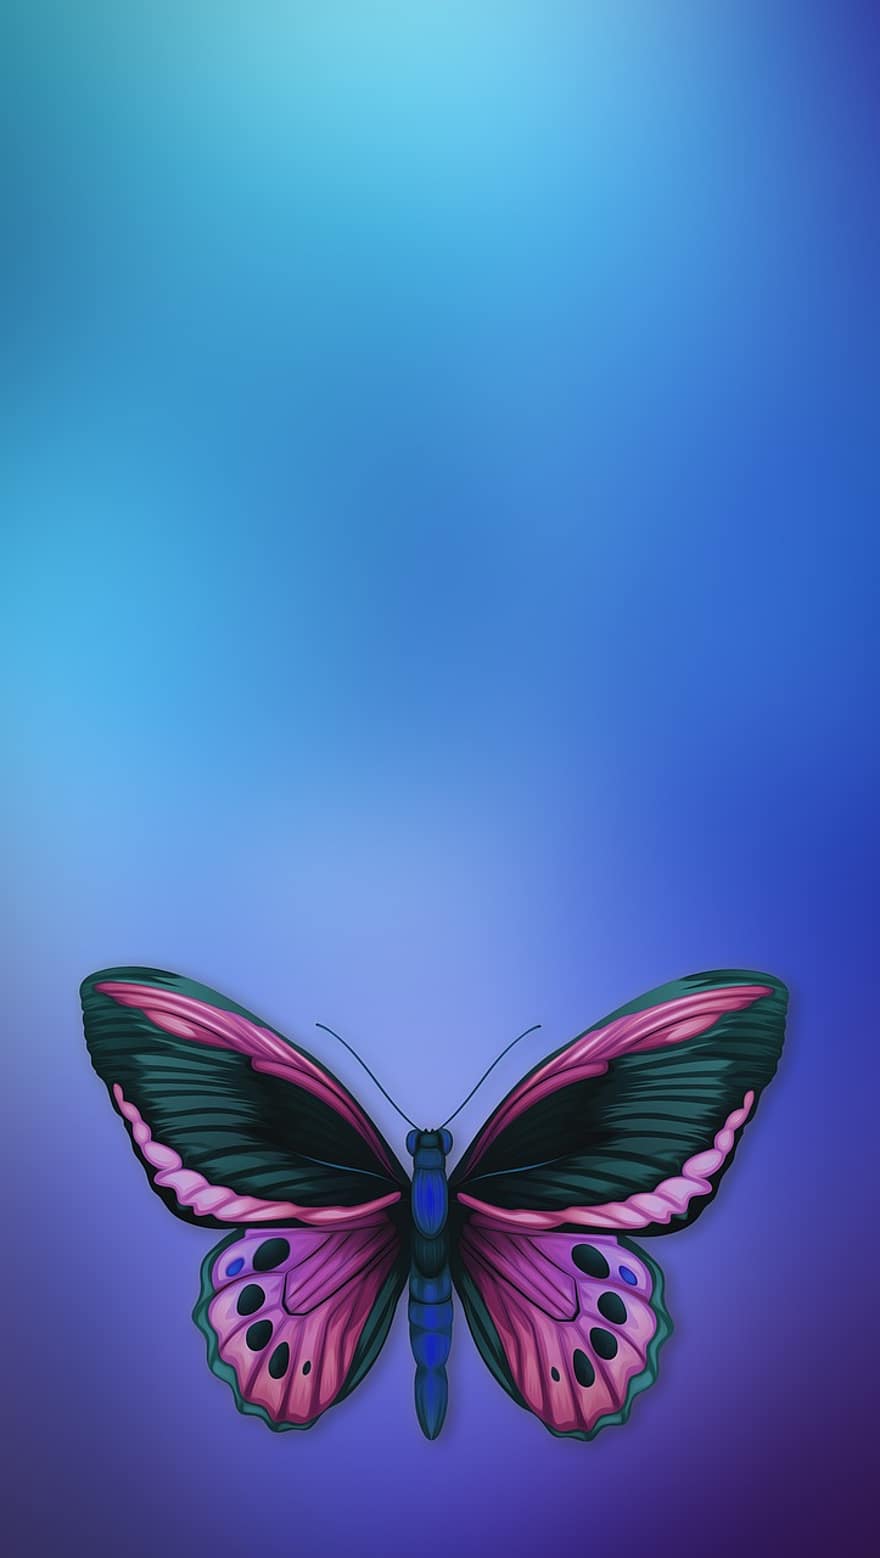 kupu-kupu, peta, jujur, vertikal, templat, penuh warna, dekoratif, kupu-kupu biru